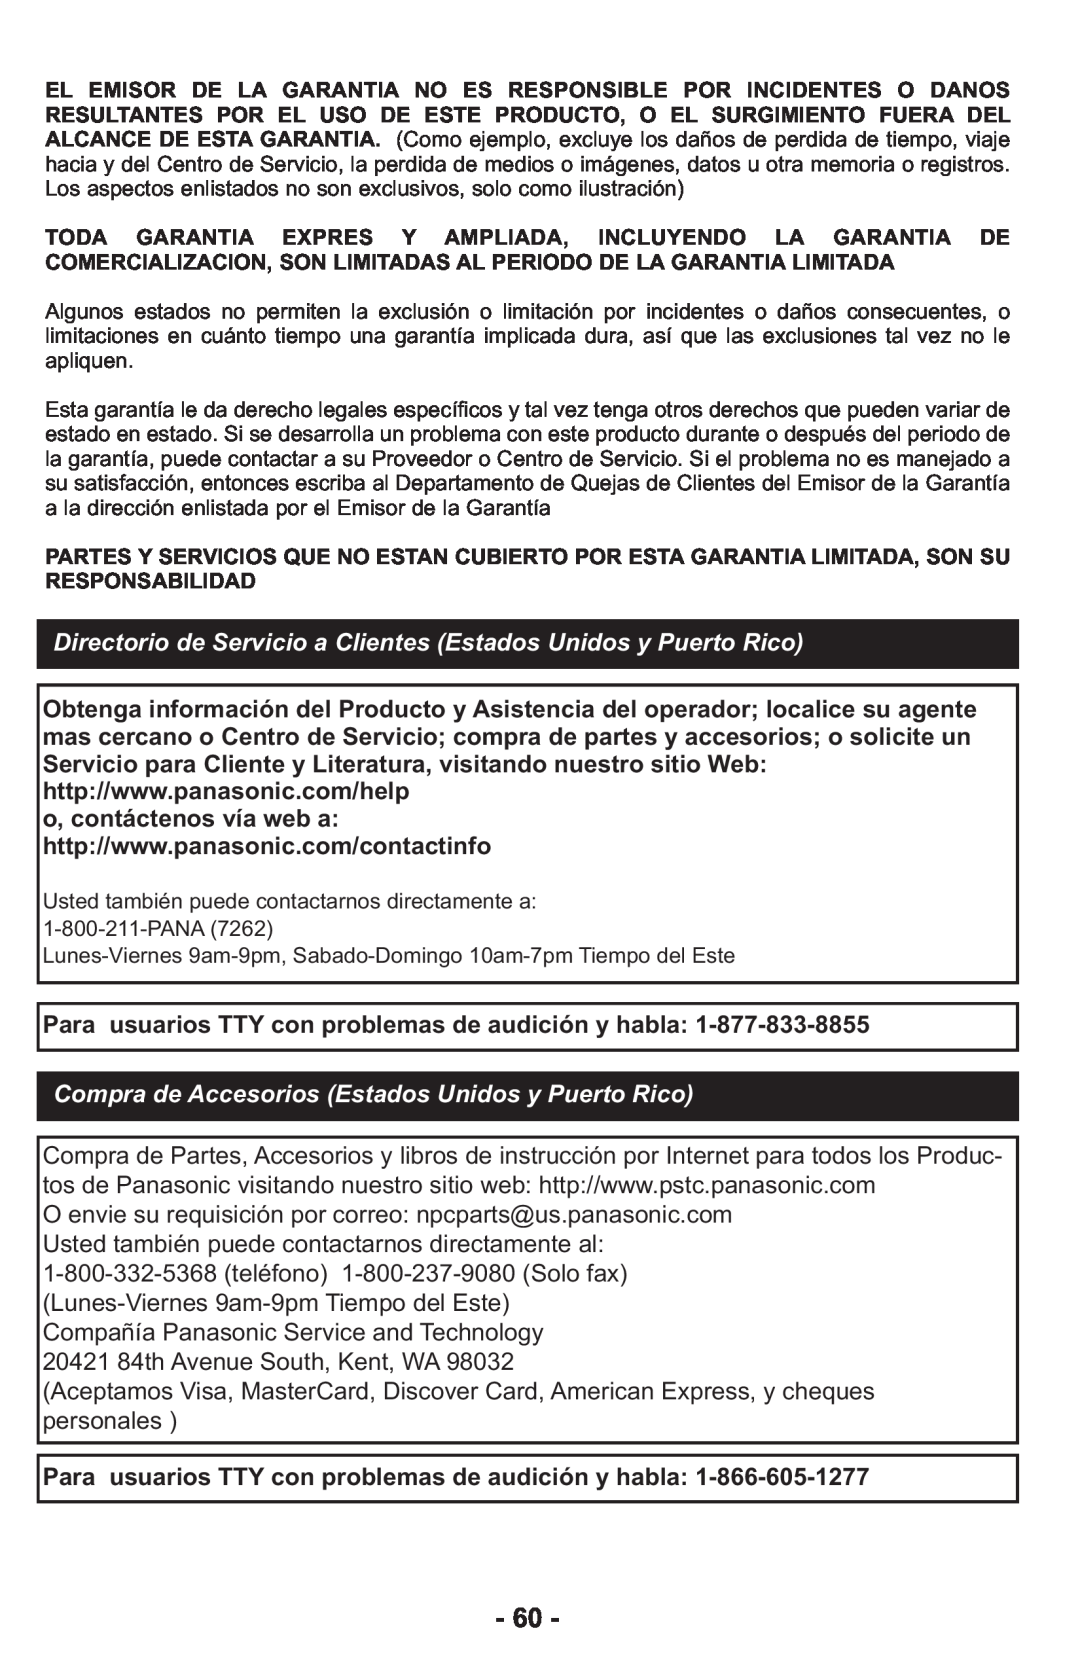 Panasonic MCCG917 manuel dutilisation Compra de Accesorios Estados Unidos y Puerto Rico 